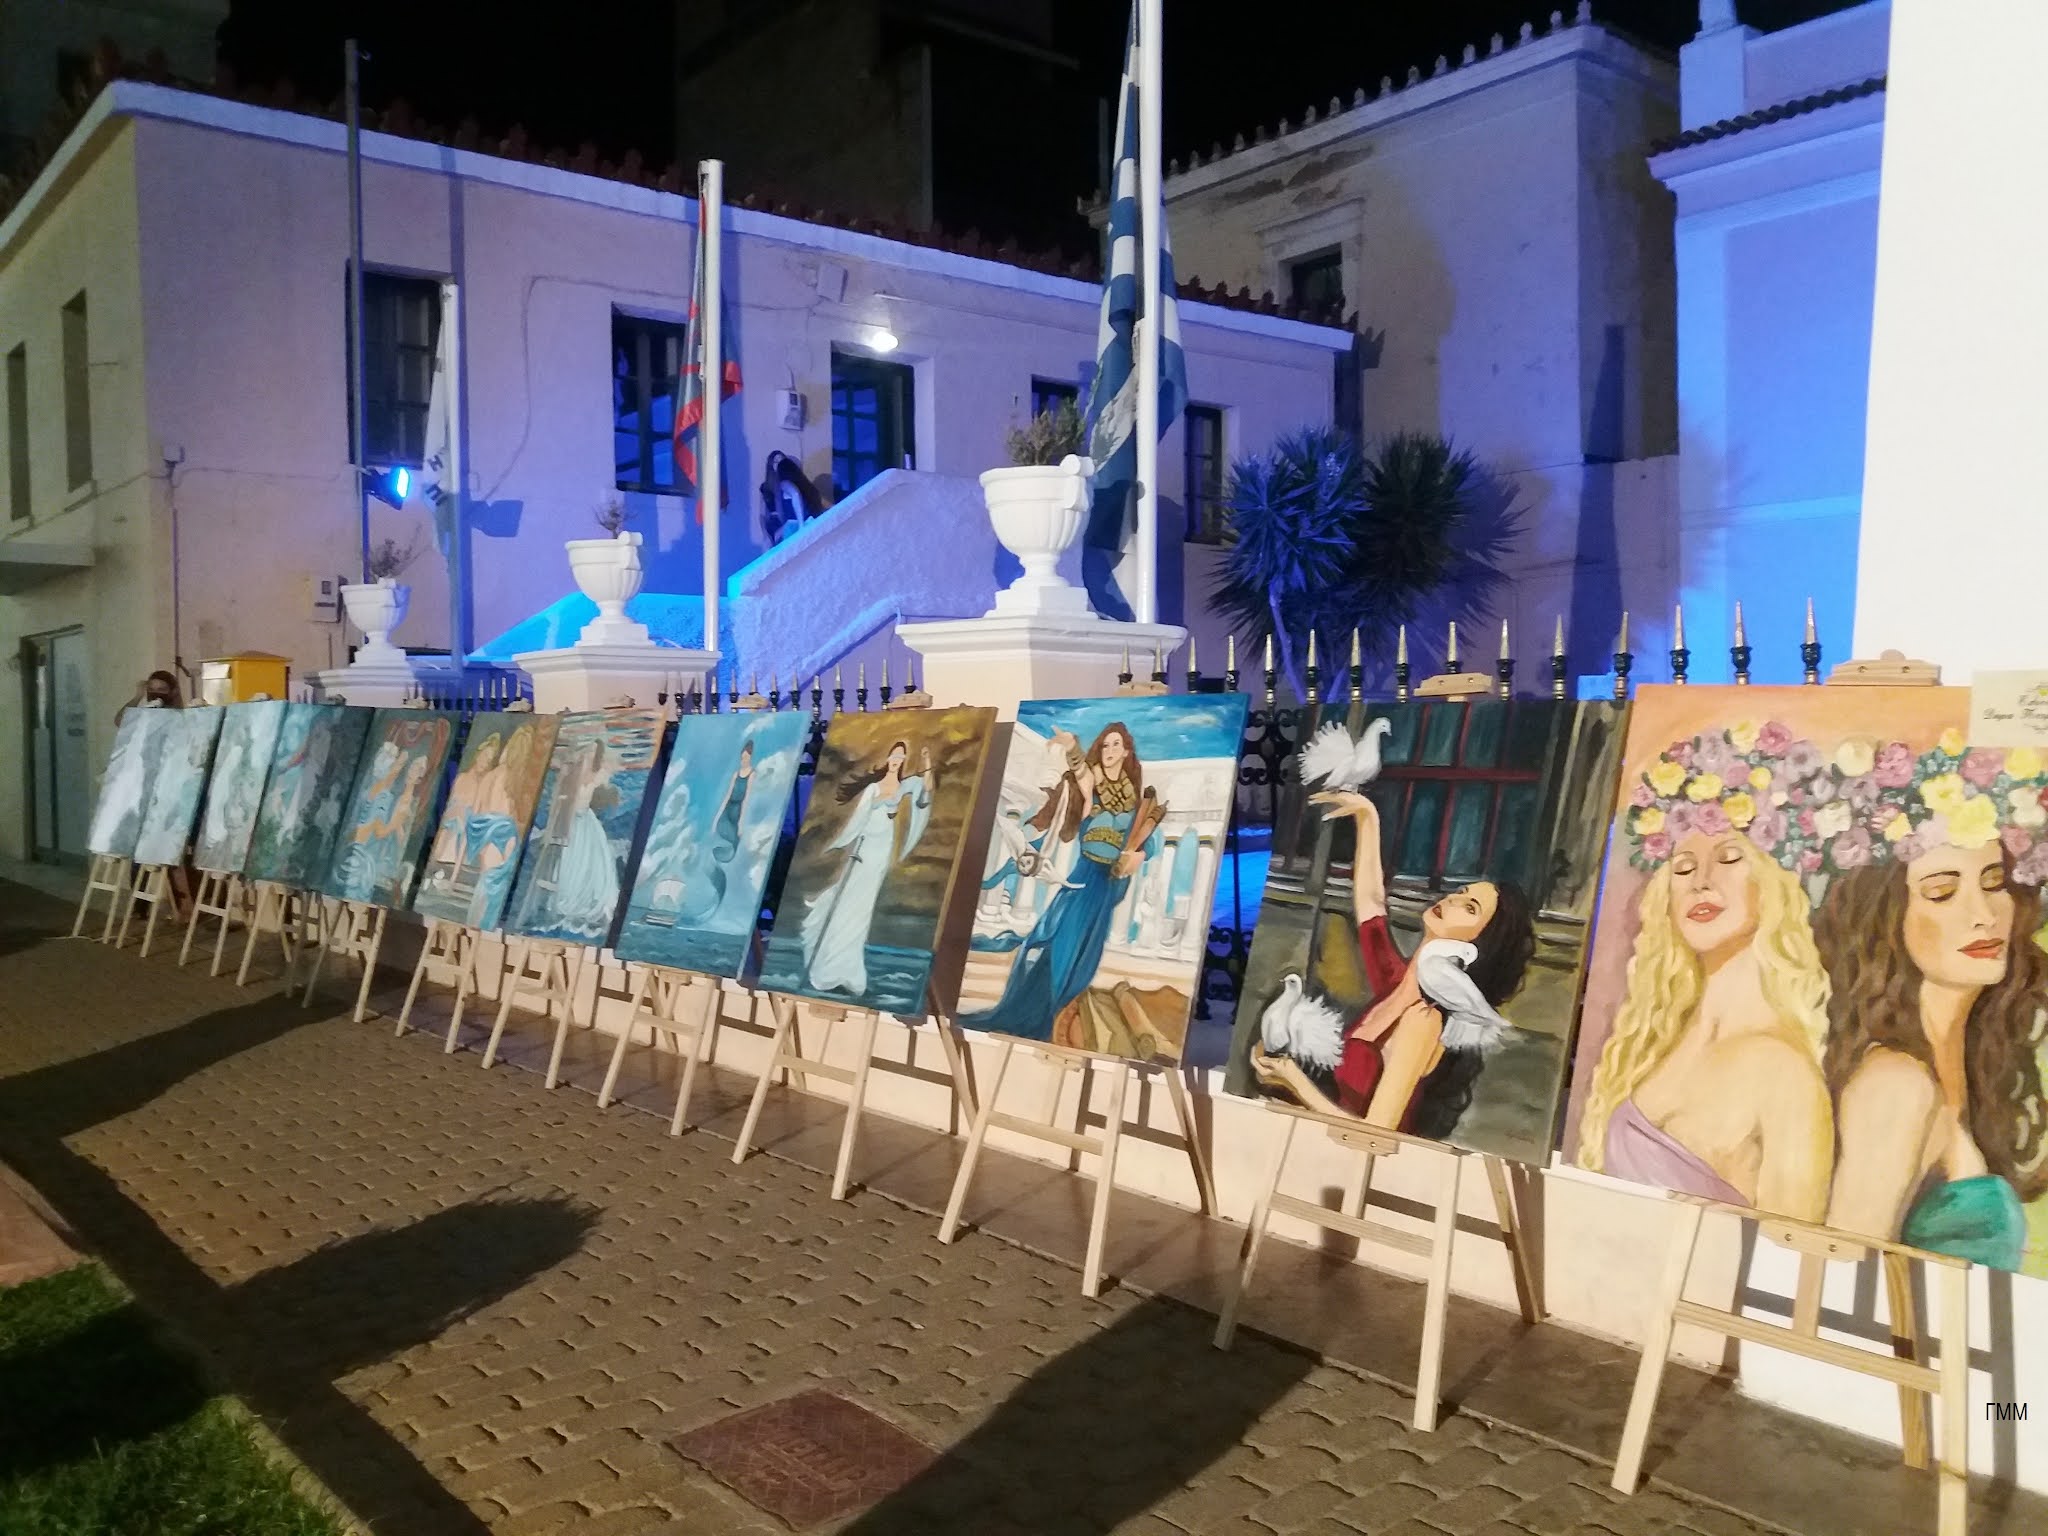 Ντόπιοι ζωγράφοι εκθέτουν τα έργα τους στο Άργος μετά μουσικής